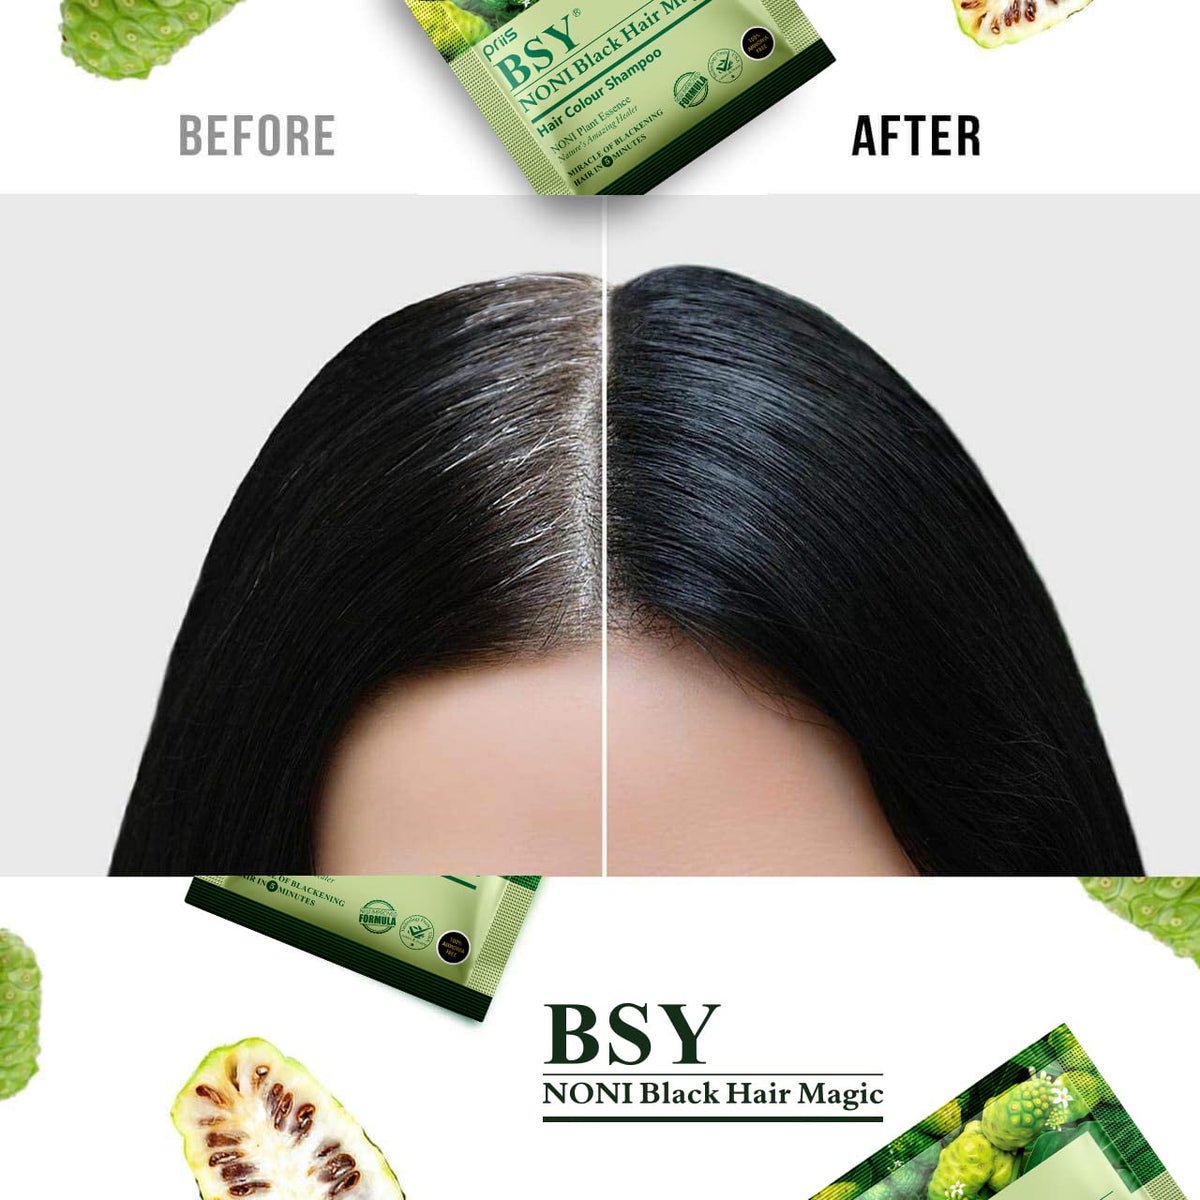 BSY Noni Black Hair Magic Hair color shampoo (12ml x 24 Sachets) | 5 Minutes Hair Colour | Noni Fruit Hair Dye